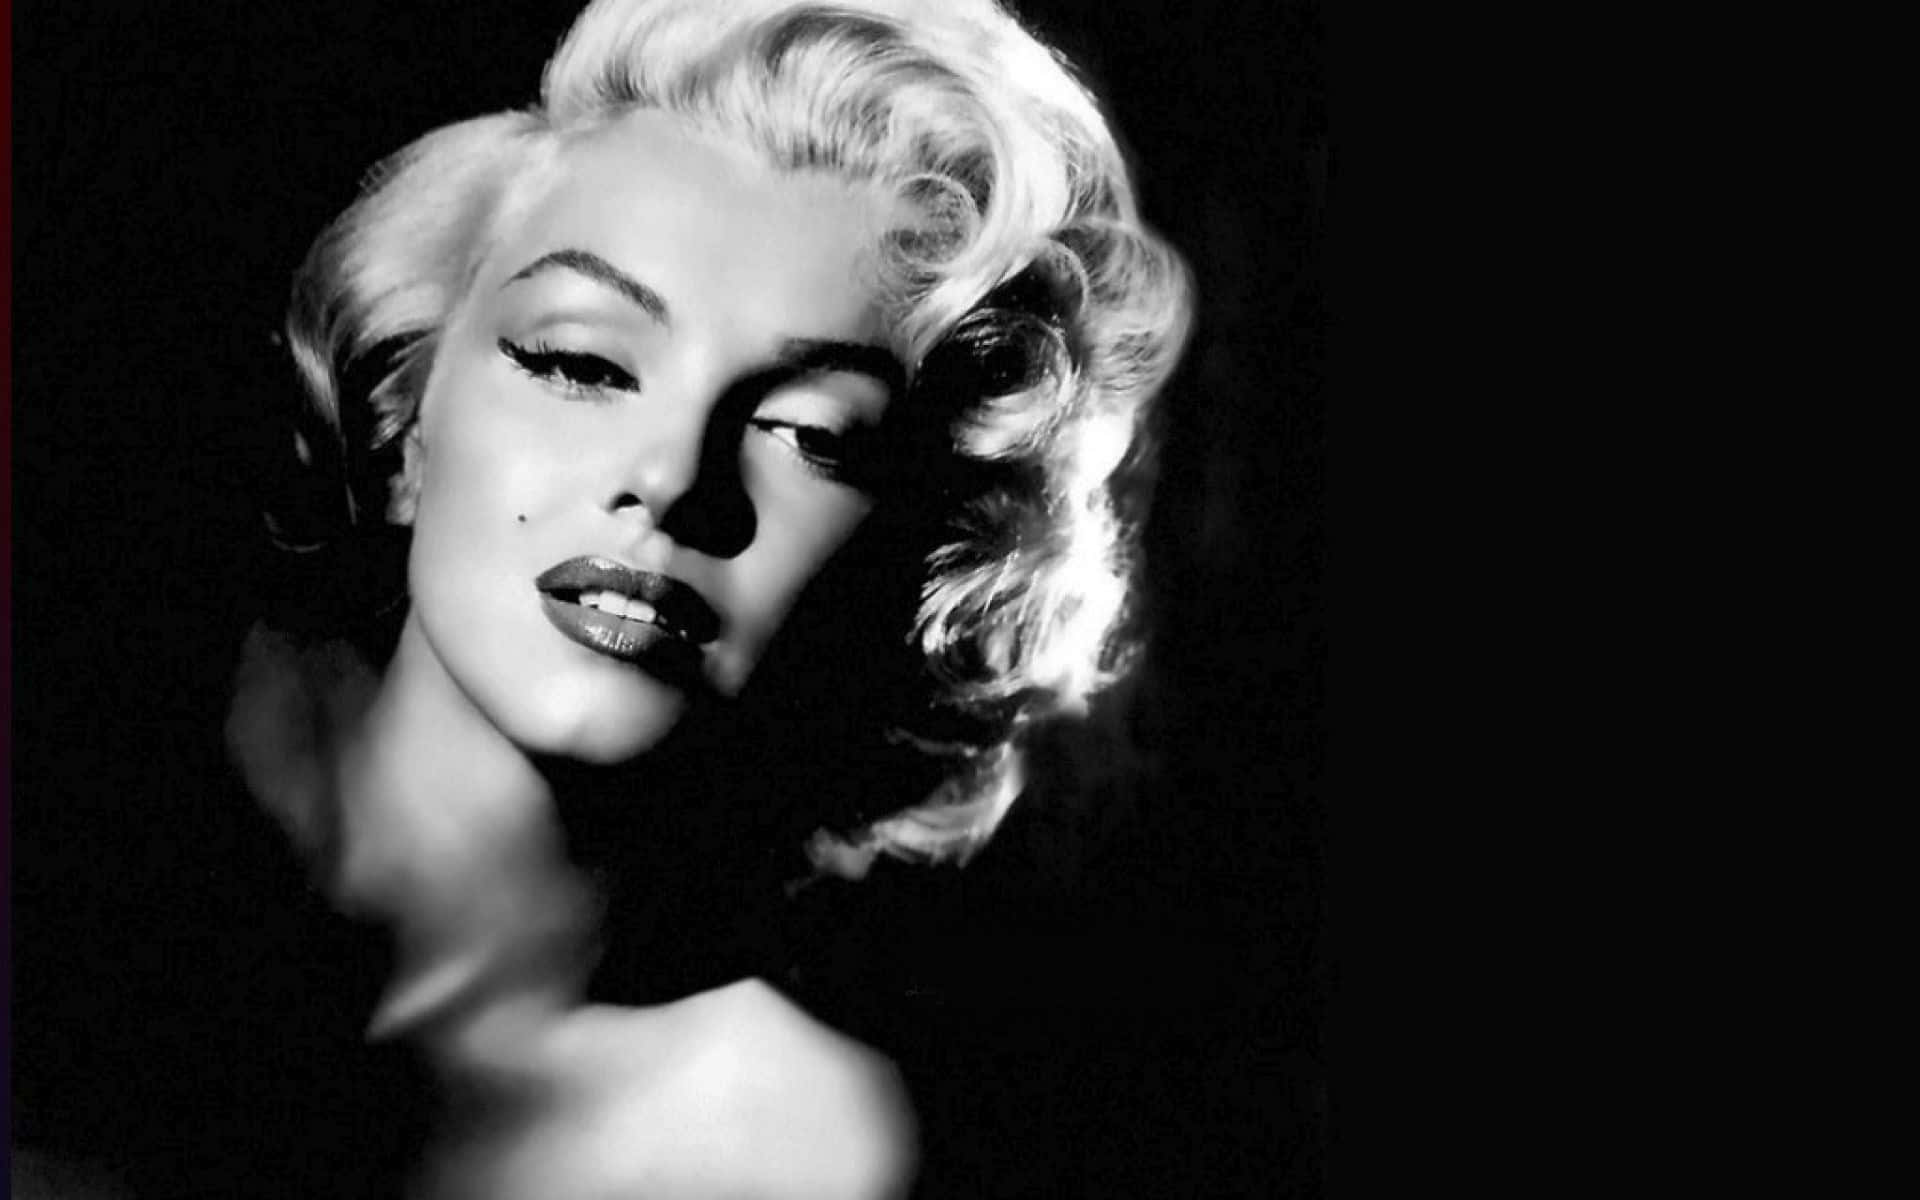 Zeitloseschönheit - Das Ikonische Marilyn Monroe